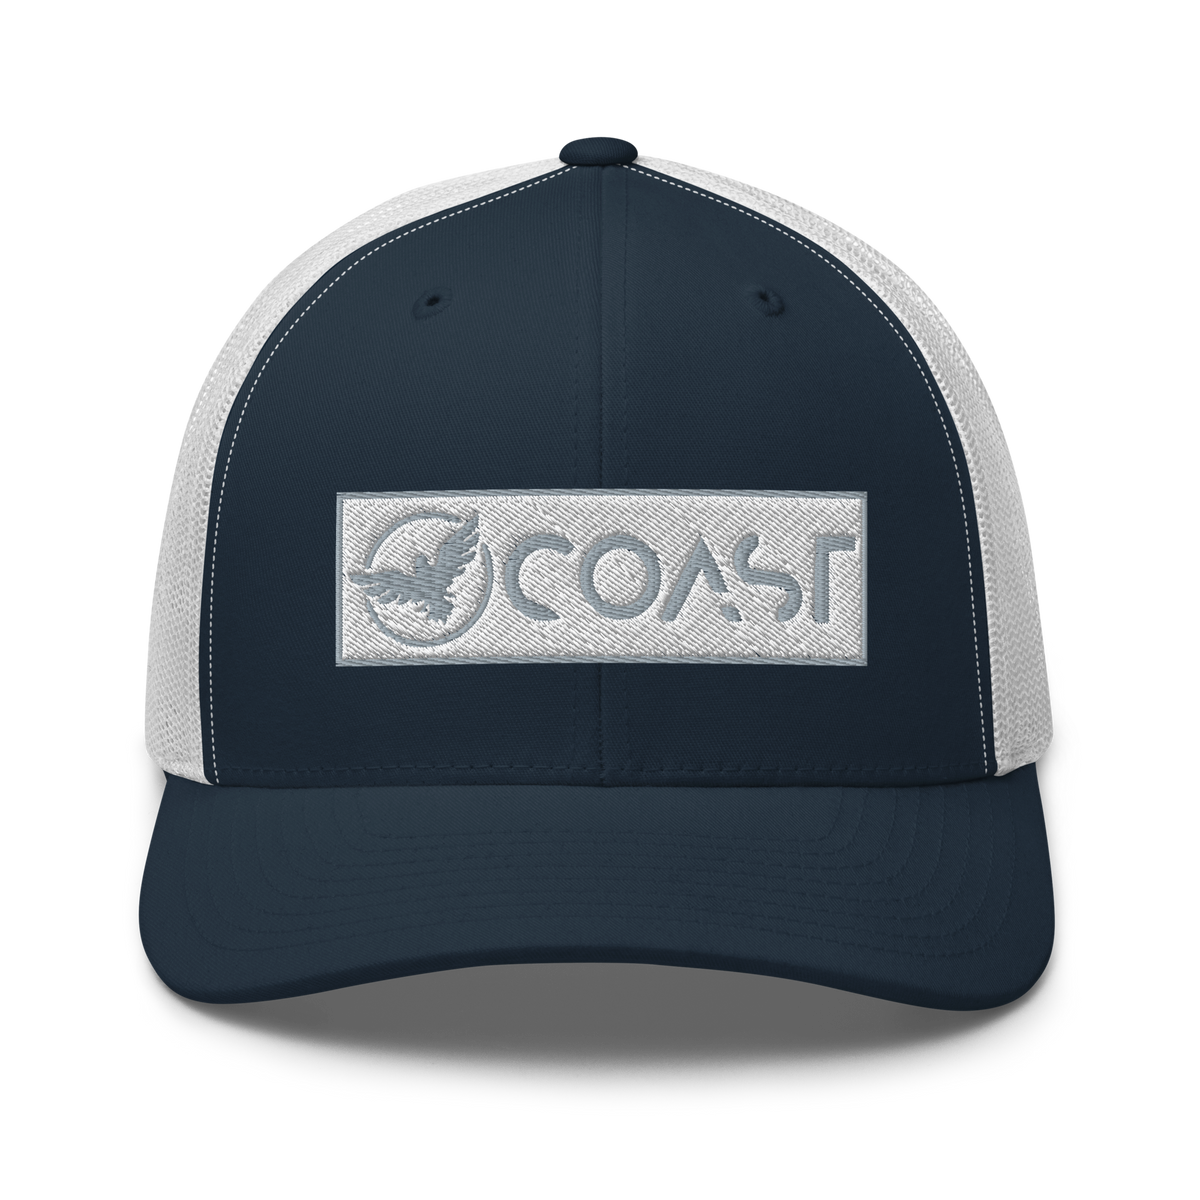 Find Your Coast® Ocean Trucker Hats